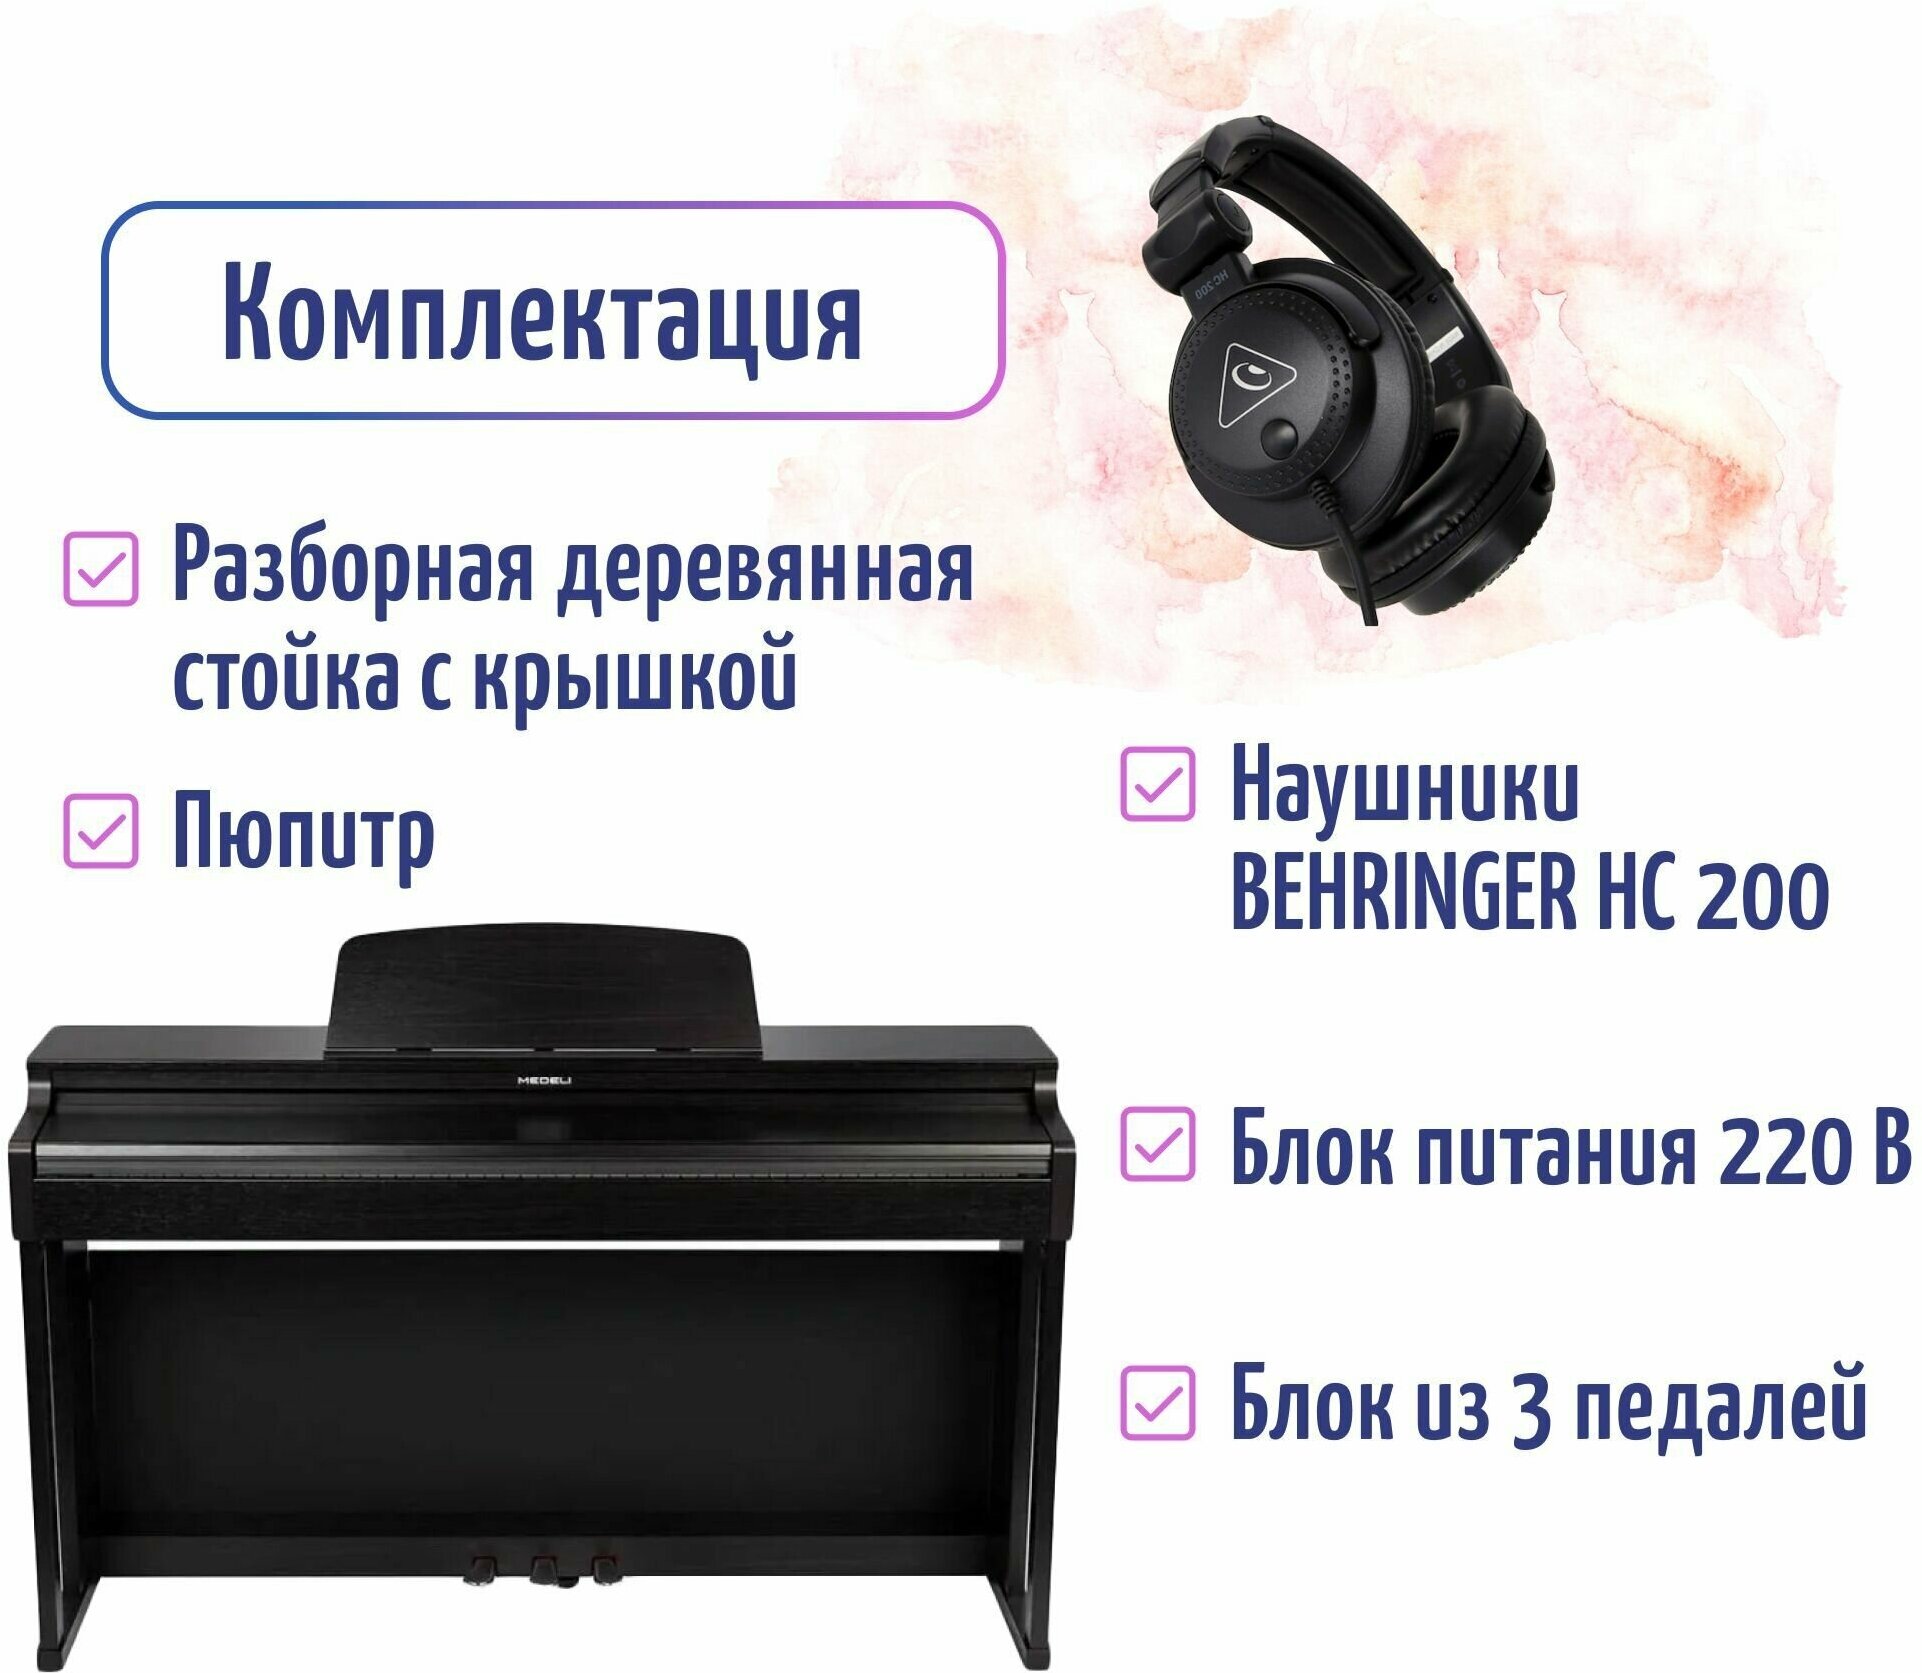 Medeli UP203 RW Цифровое фортепиано со стойкой, крышкой и наушниками BEHRINGER HC 200 в комплекте